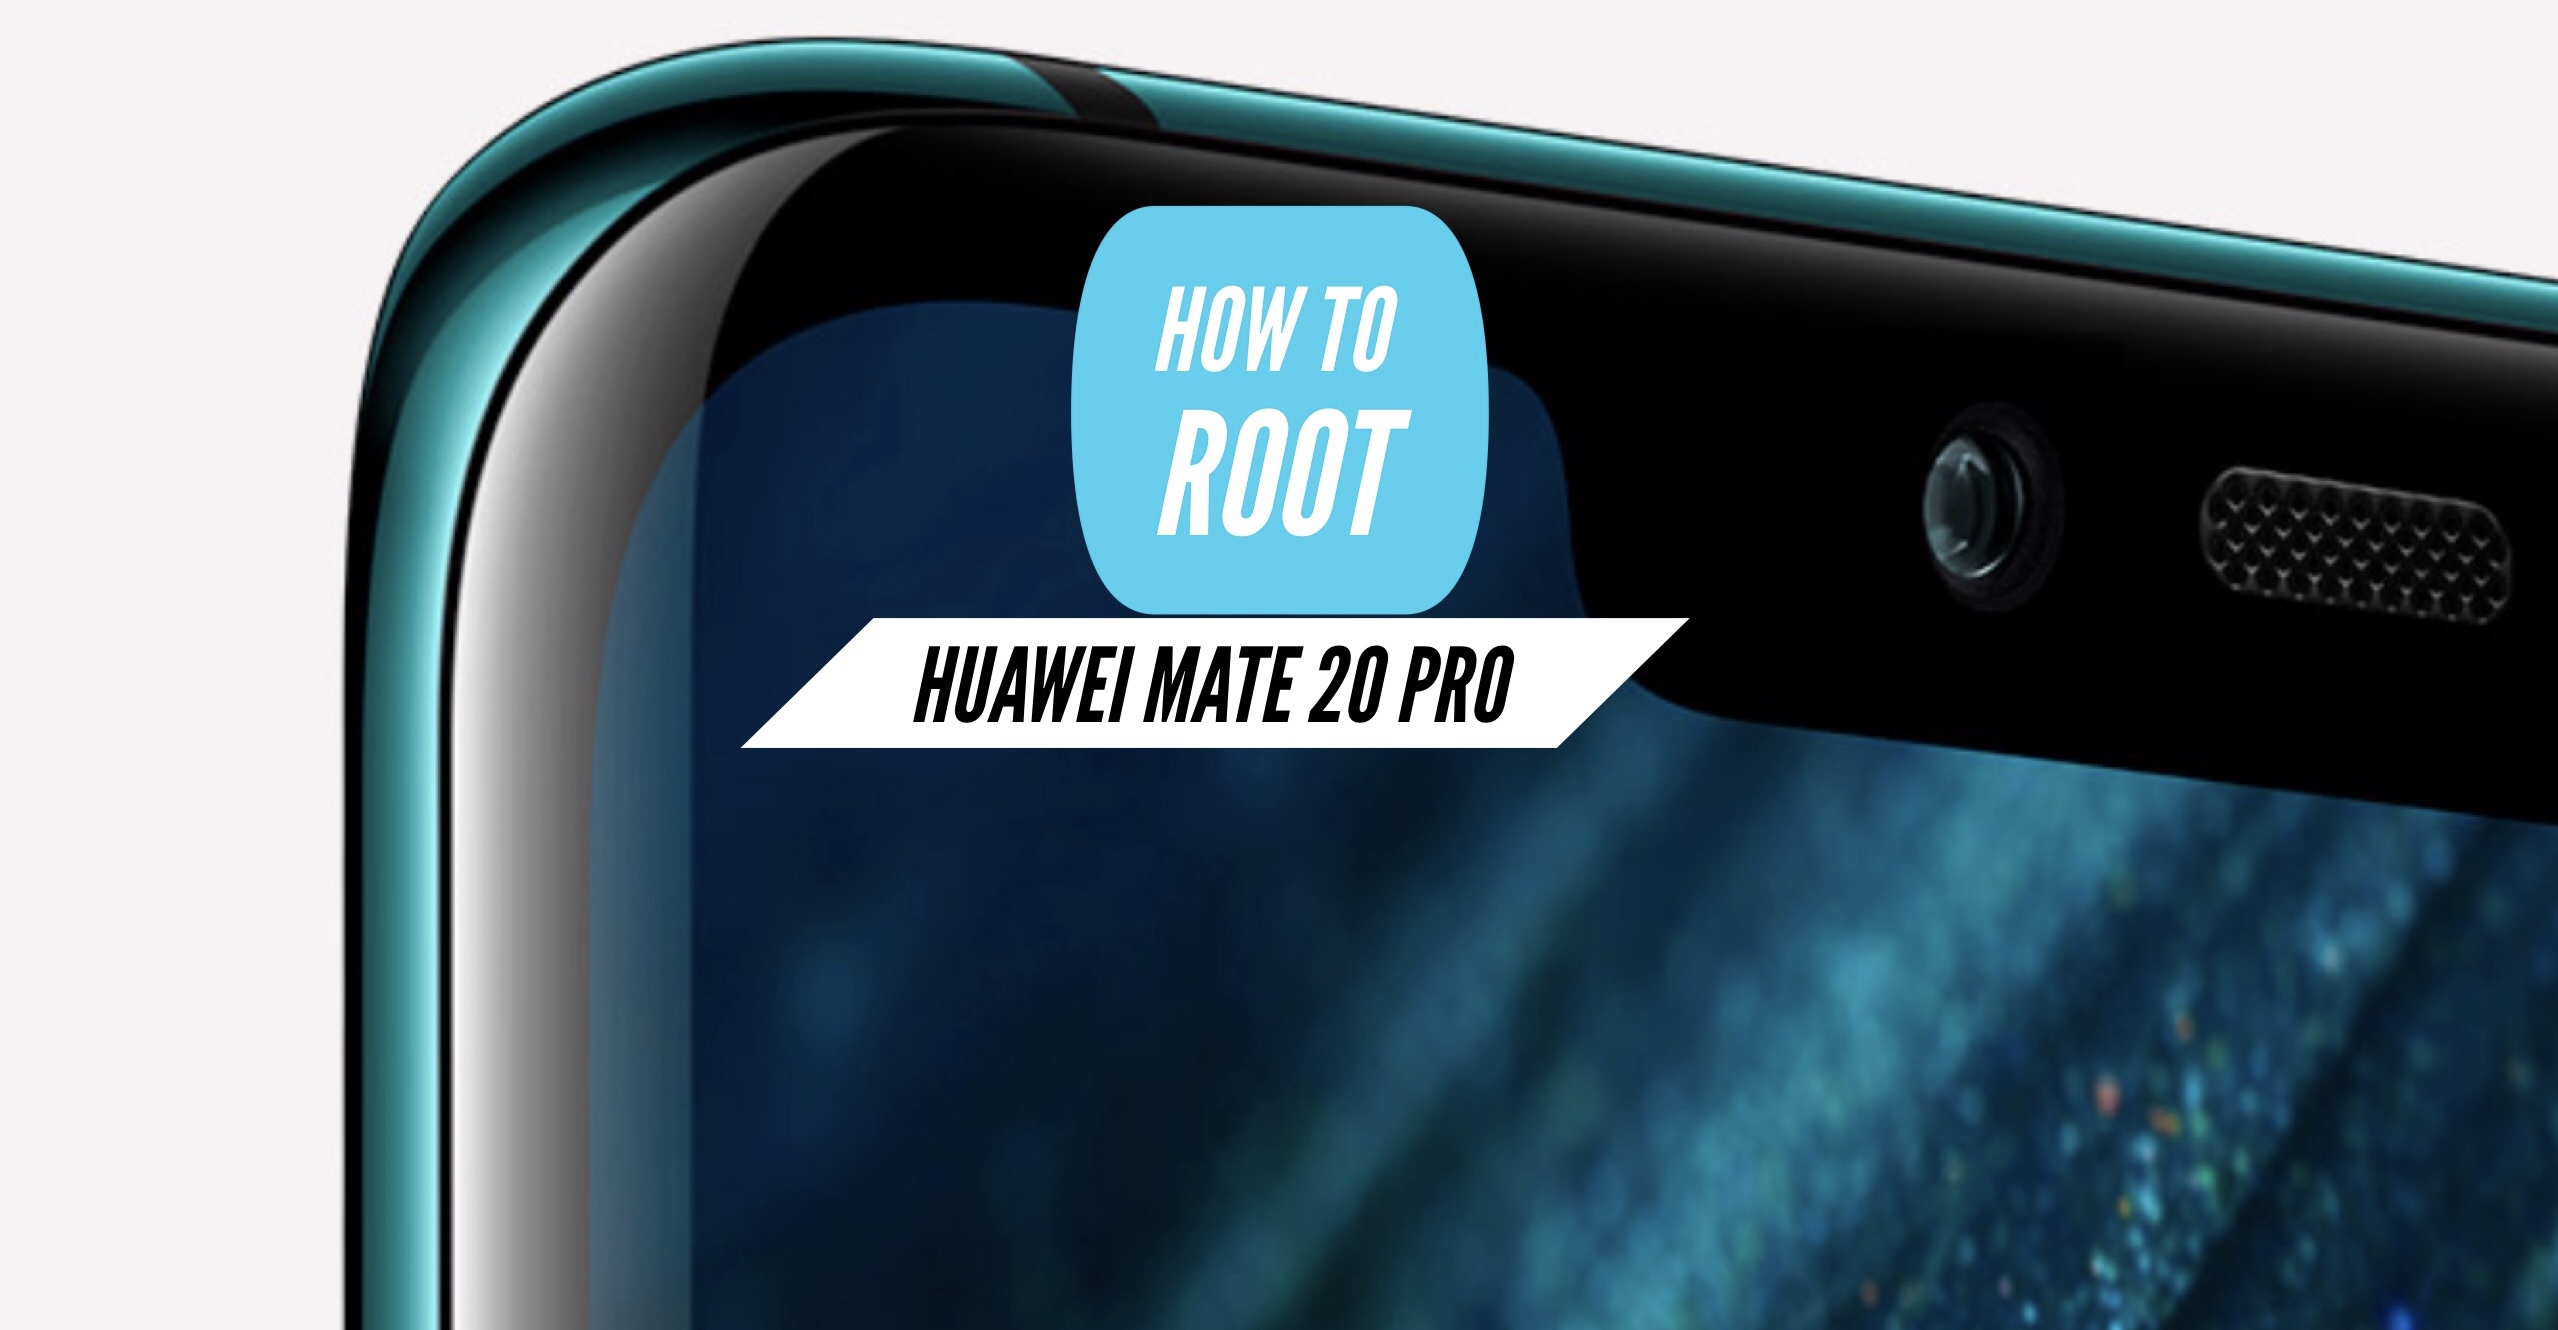 Kostume Sølv En skønne dag Root Huawei Mate 20 Pro via SuperSU & Magisk + Two More METHODS!